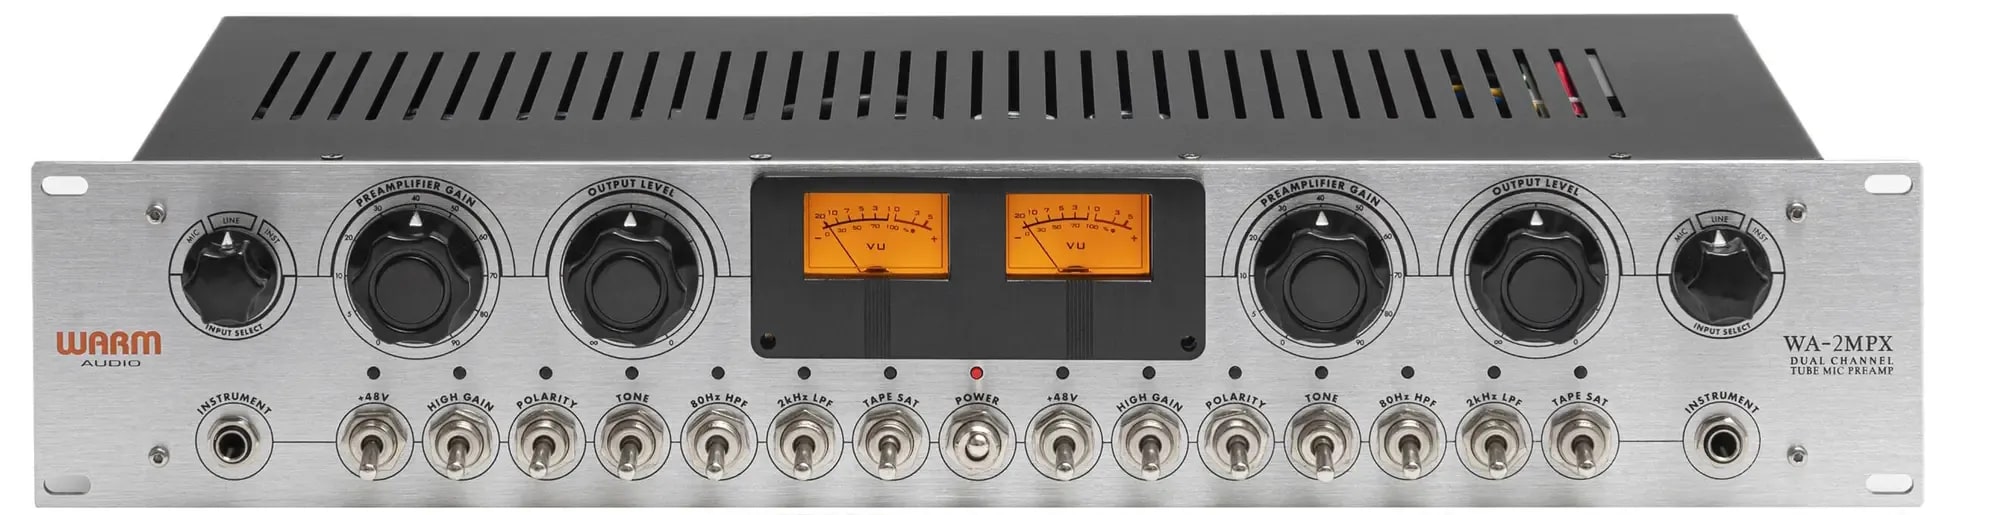 Микрофонные предусилители и микшеры Warm Audio WA-2MPX микрофонные предусилители и микшеры spl track one 2960